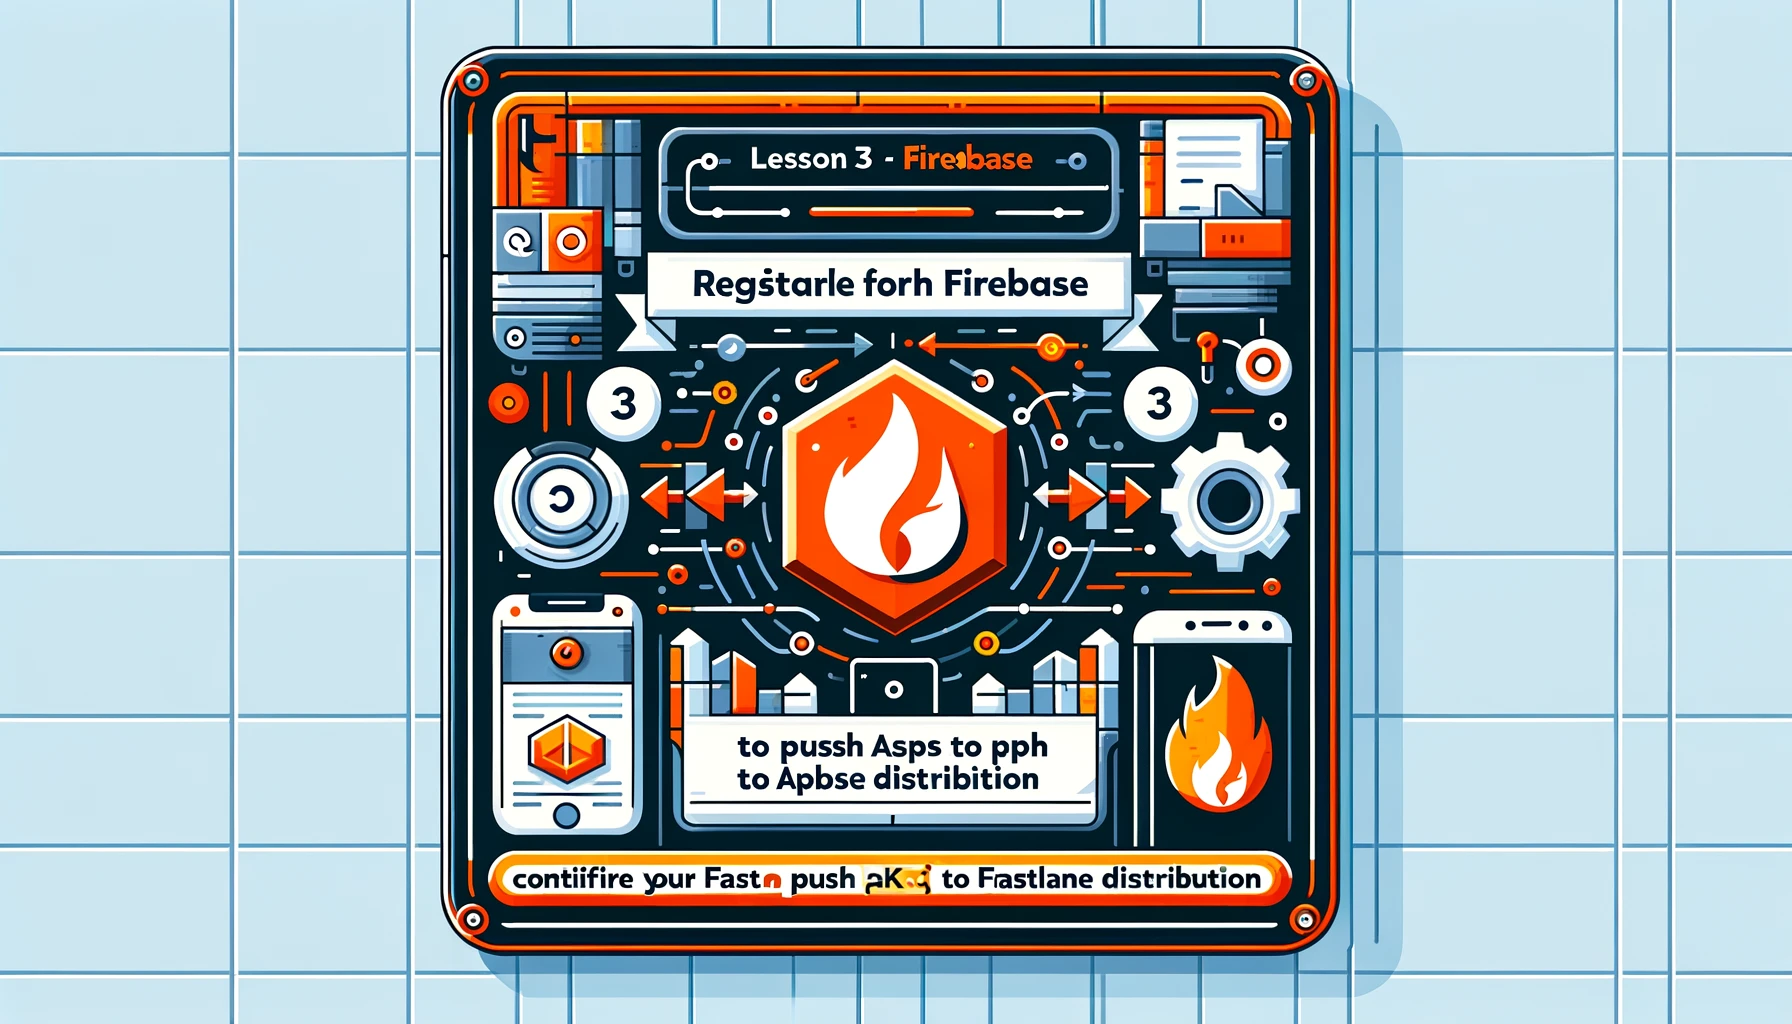 Bài 3 - Đăng ký Firebase và cấu hình Fastlane đẩy APK lên Firebase Distribution (Phiên bản thử nghiệm)